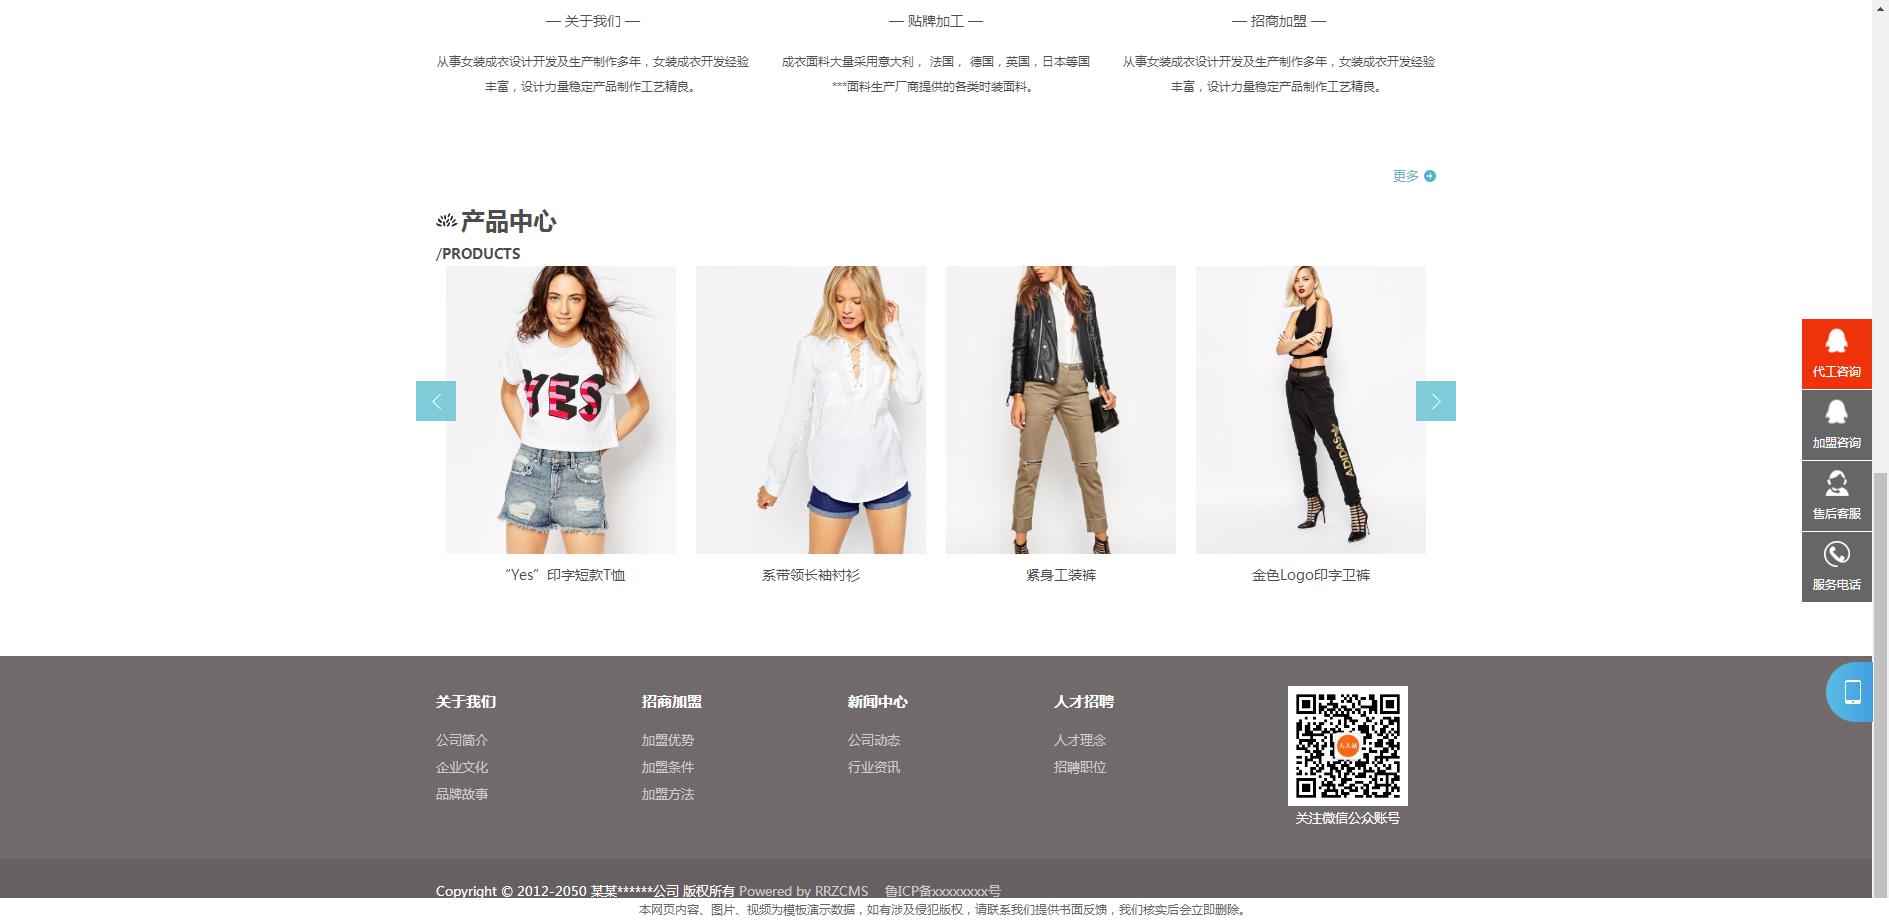 中英双语服装连锁加盟店网站模板(响应式)